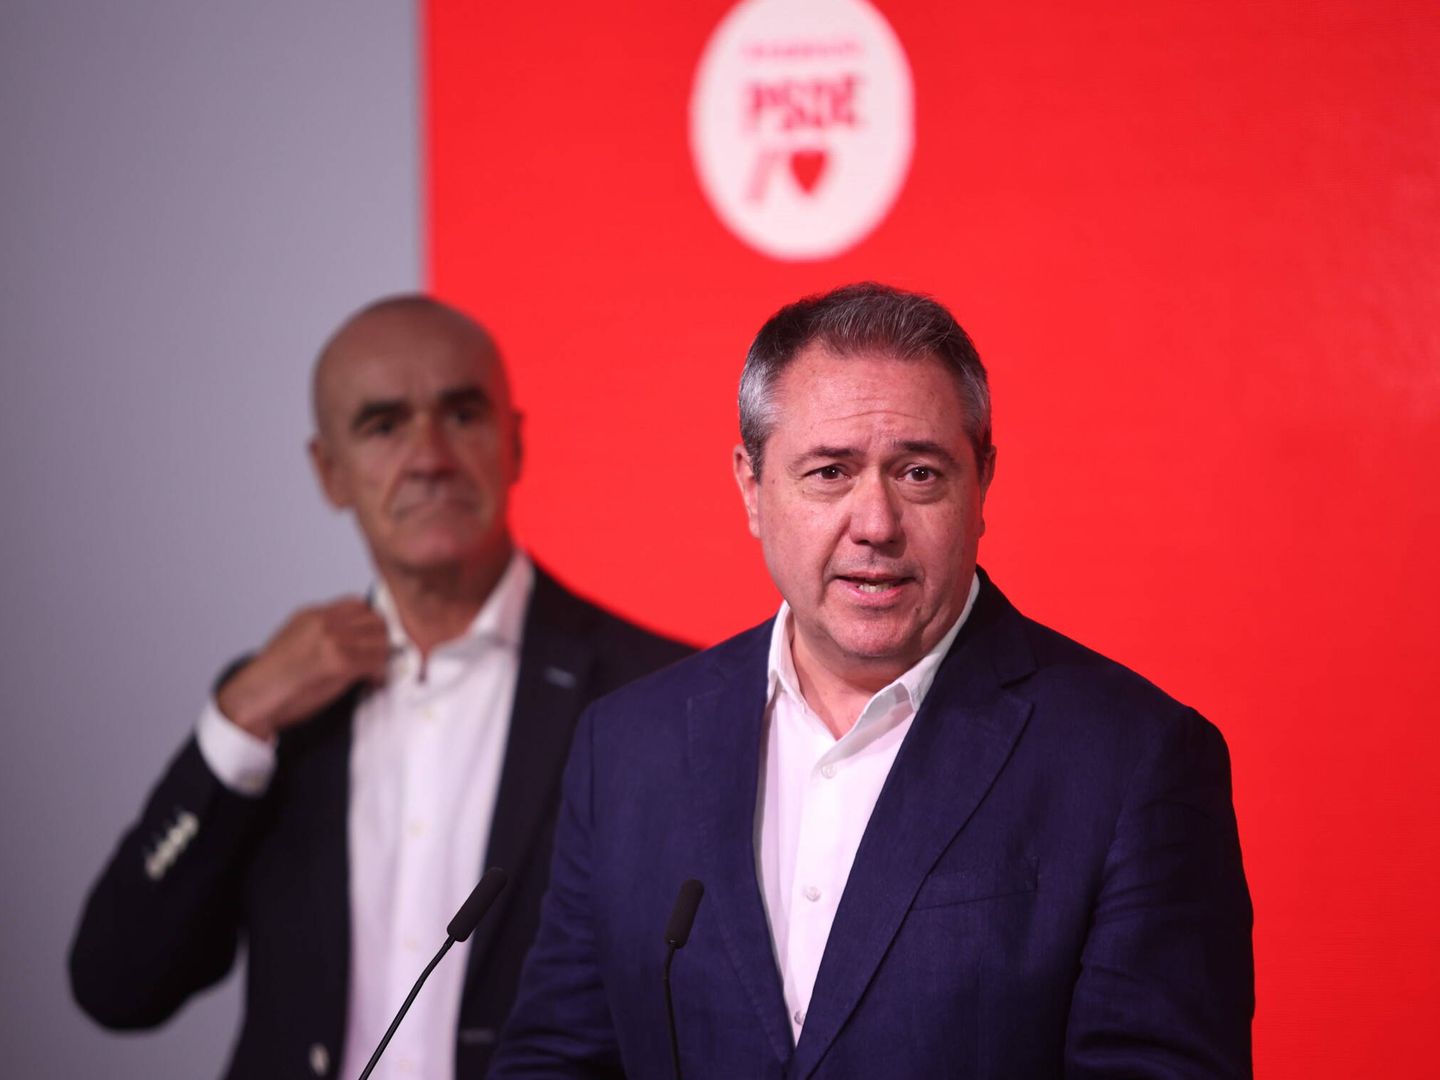 Juan Espadas comparece en la sede socialista junto con el alcalde de Sevilla, Antonio Muñoz. (Europa Press/Joaquín Corchero)